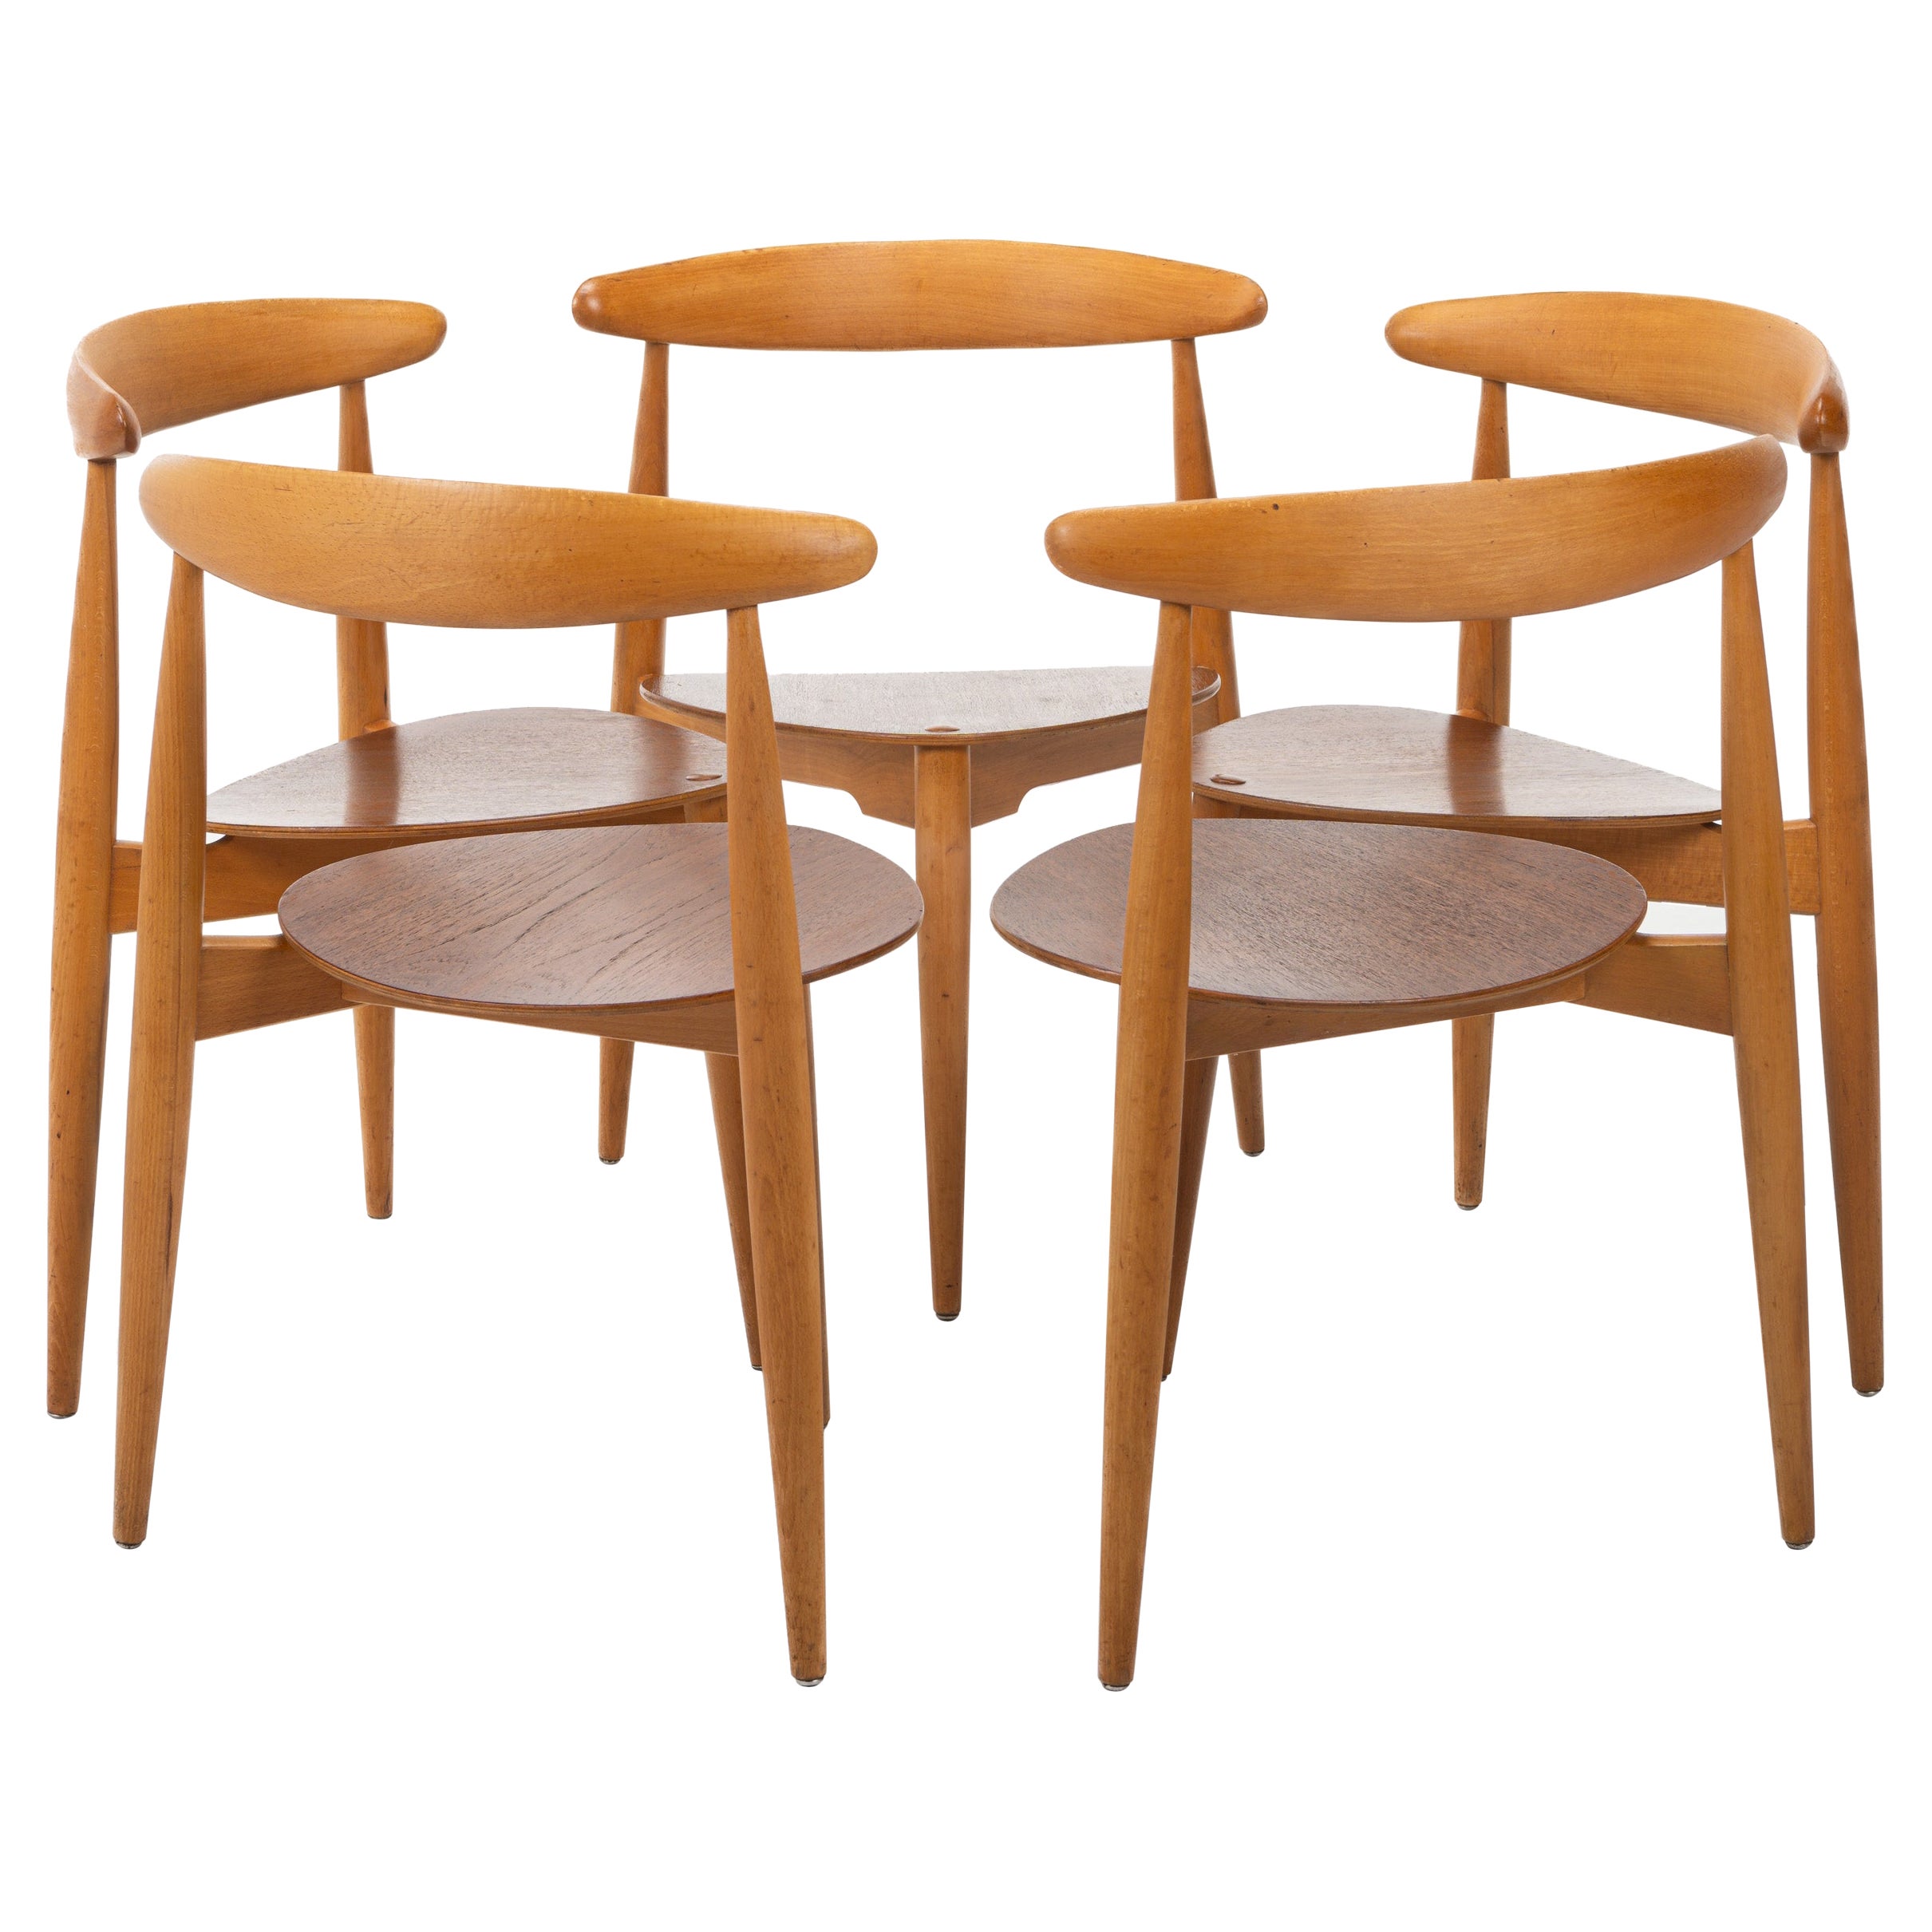 Set of 5 'FH4103' dining chairs by Hans J. Wegner for Fritz Hansen, Denmark 1950